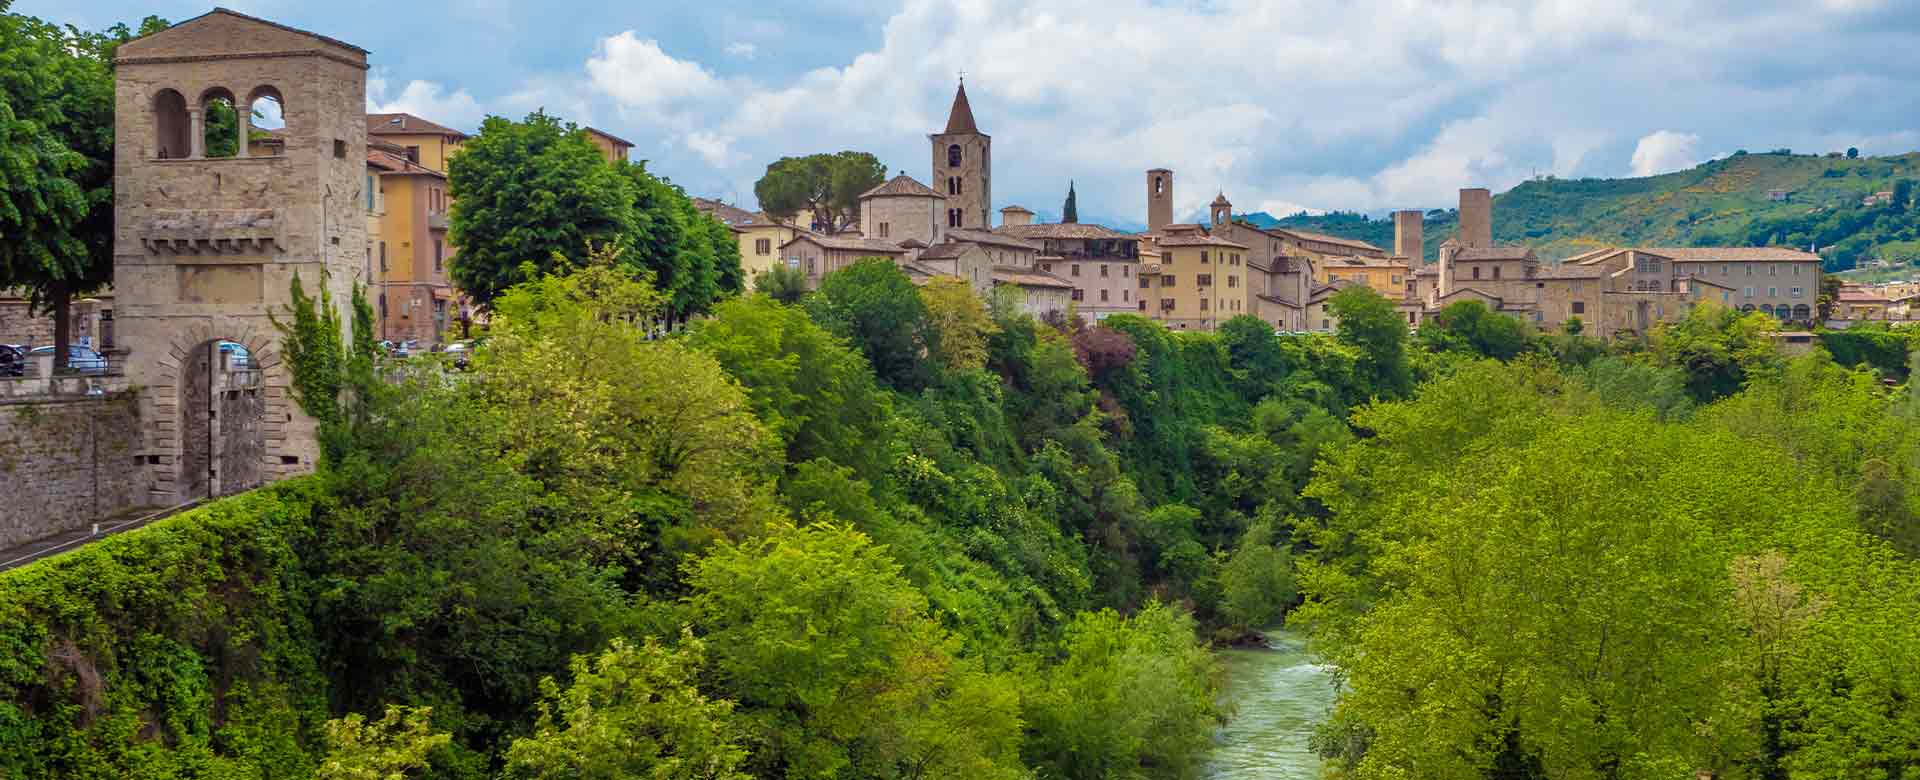 Ascoli Piceno, una vista del centro storico